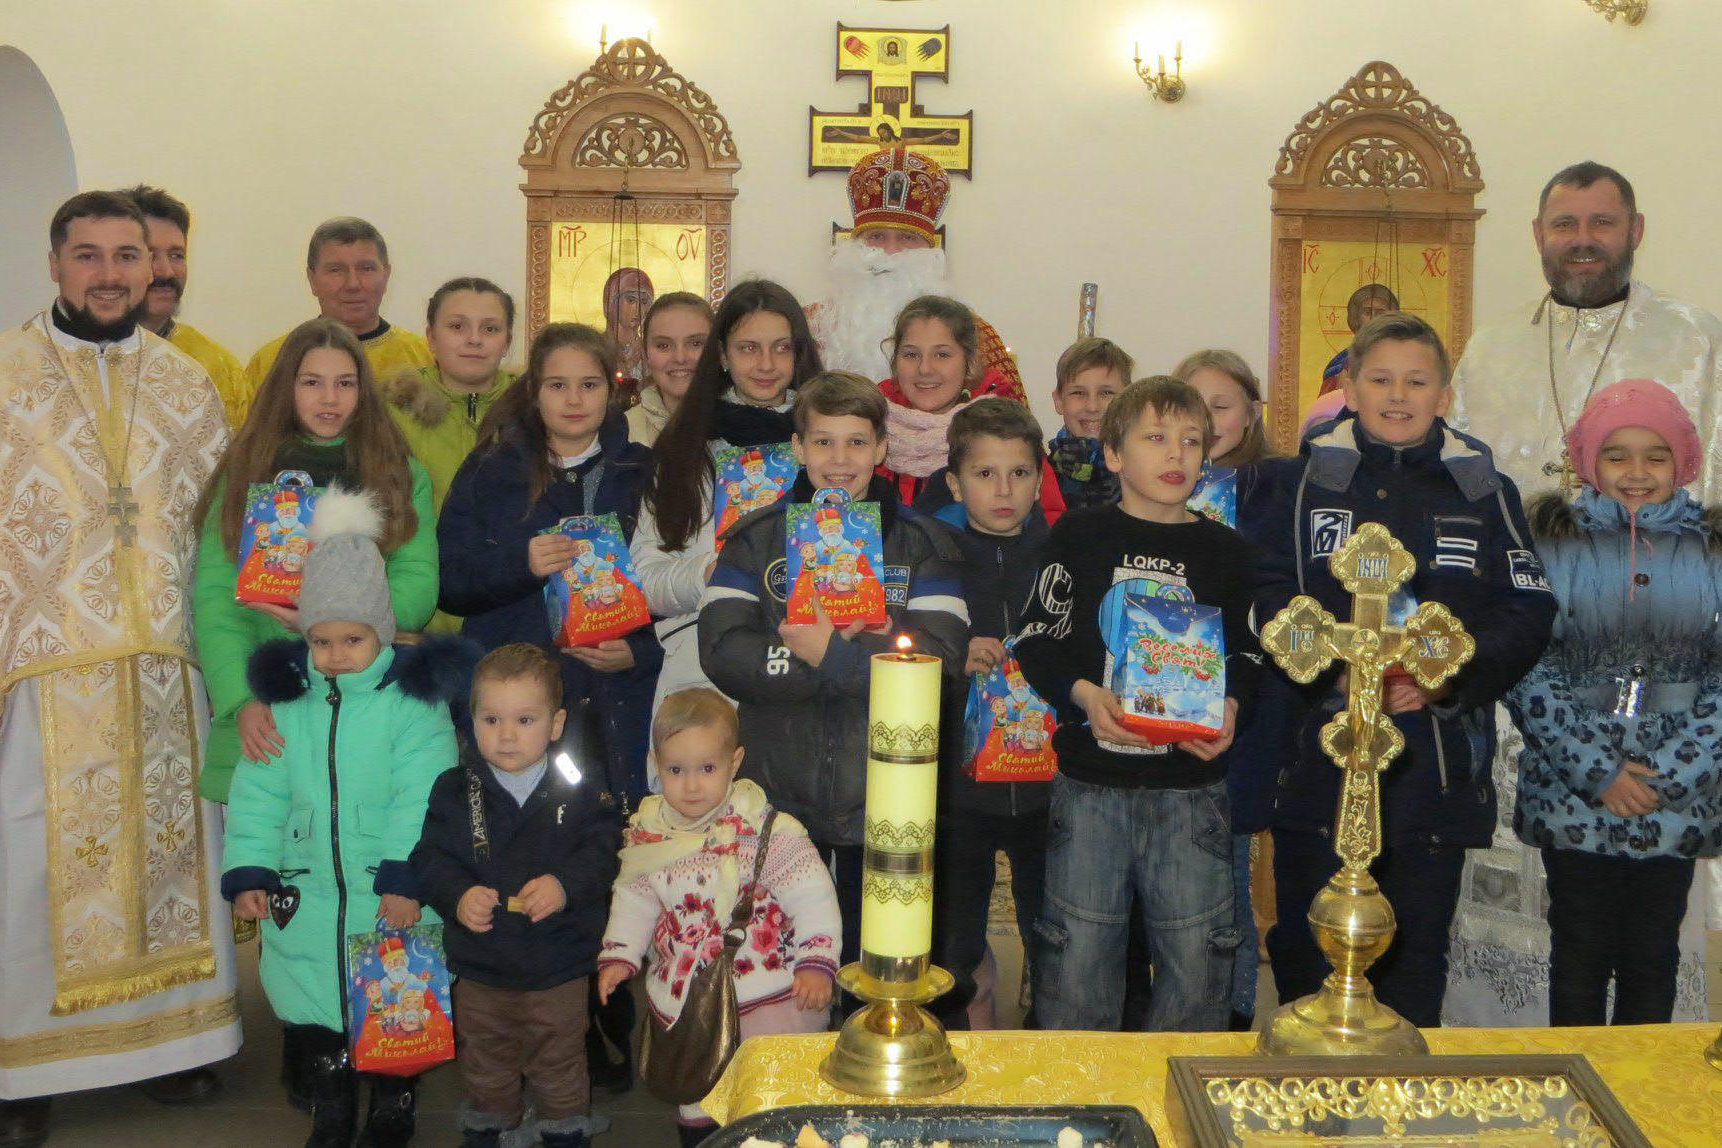 Gruppenbild von Geistlichen und Kindern, die Kinder halten Geschenke in ihren Händen. 